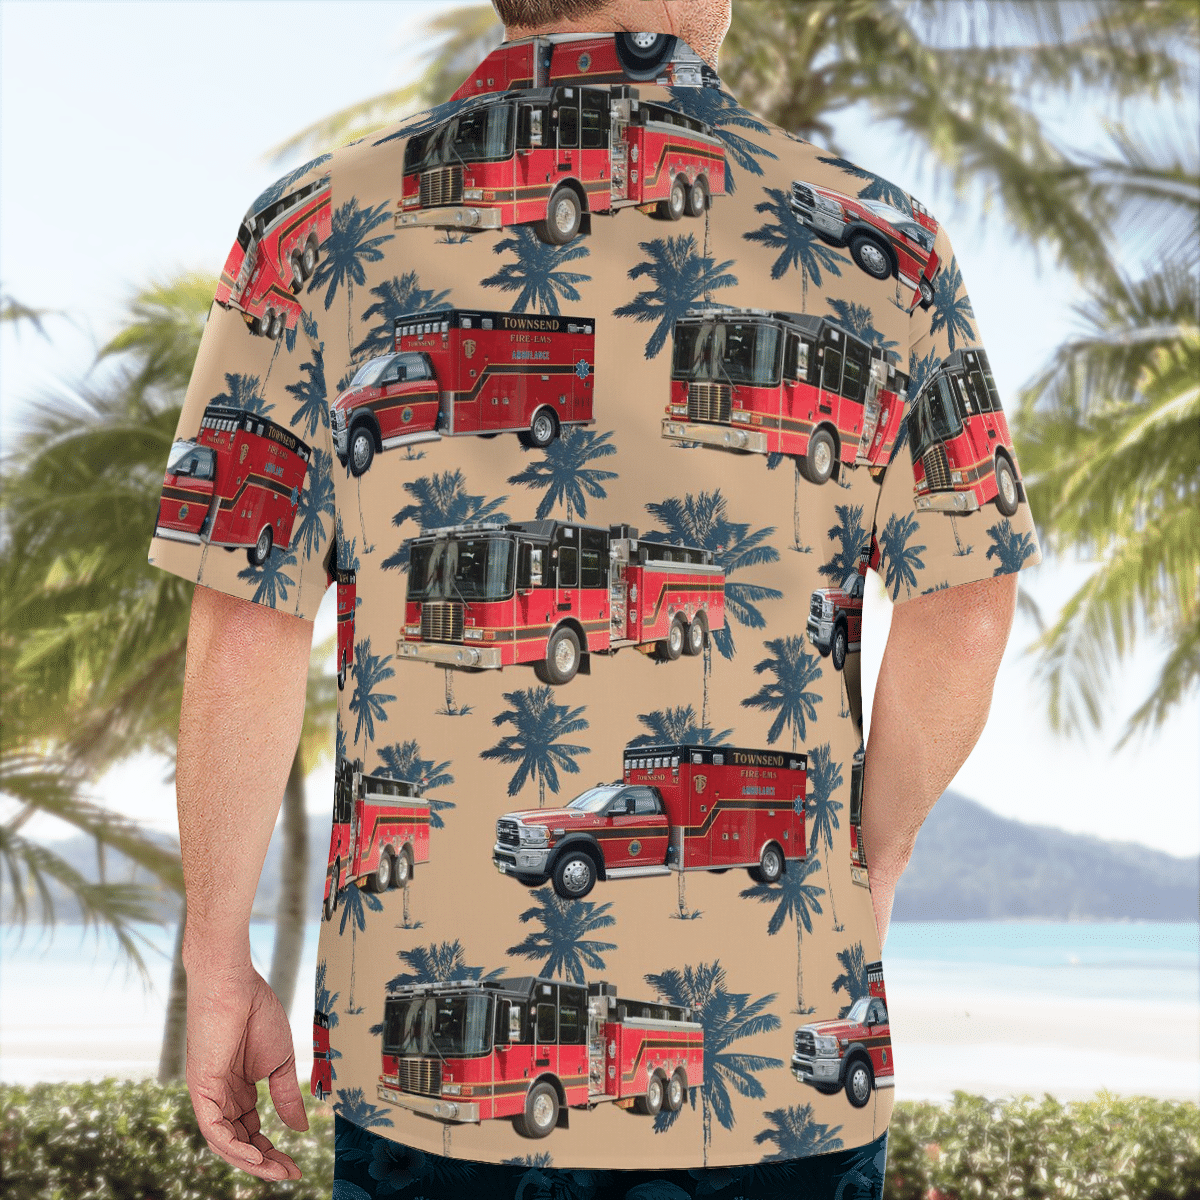 BEST Townsend Fire-EMS Townsend, Massachusetts 3D Aloha Shirt1